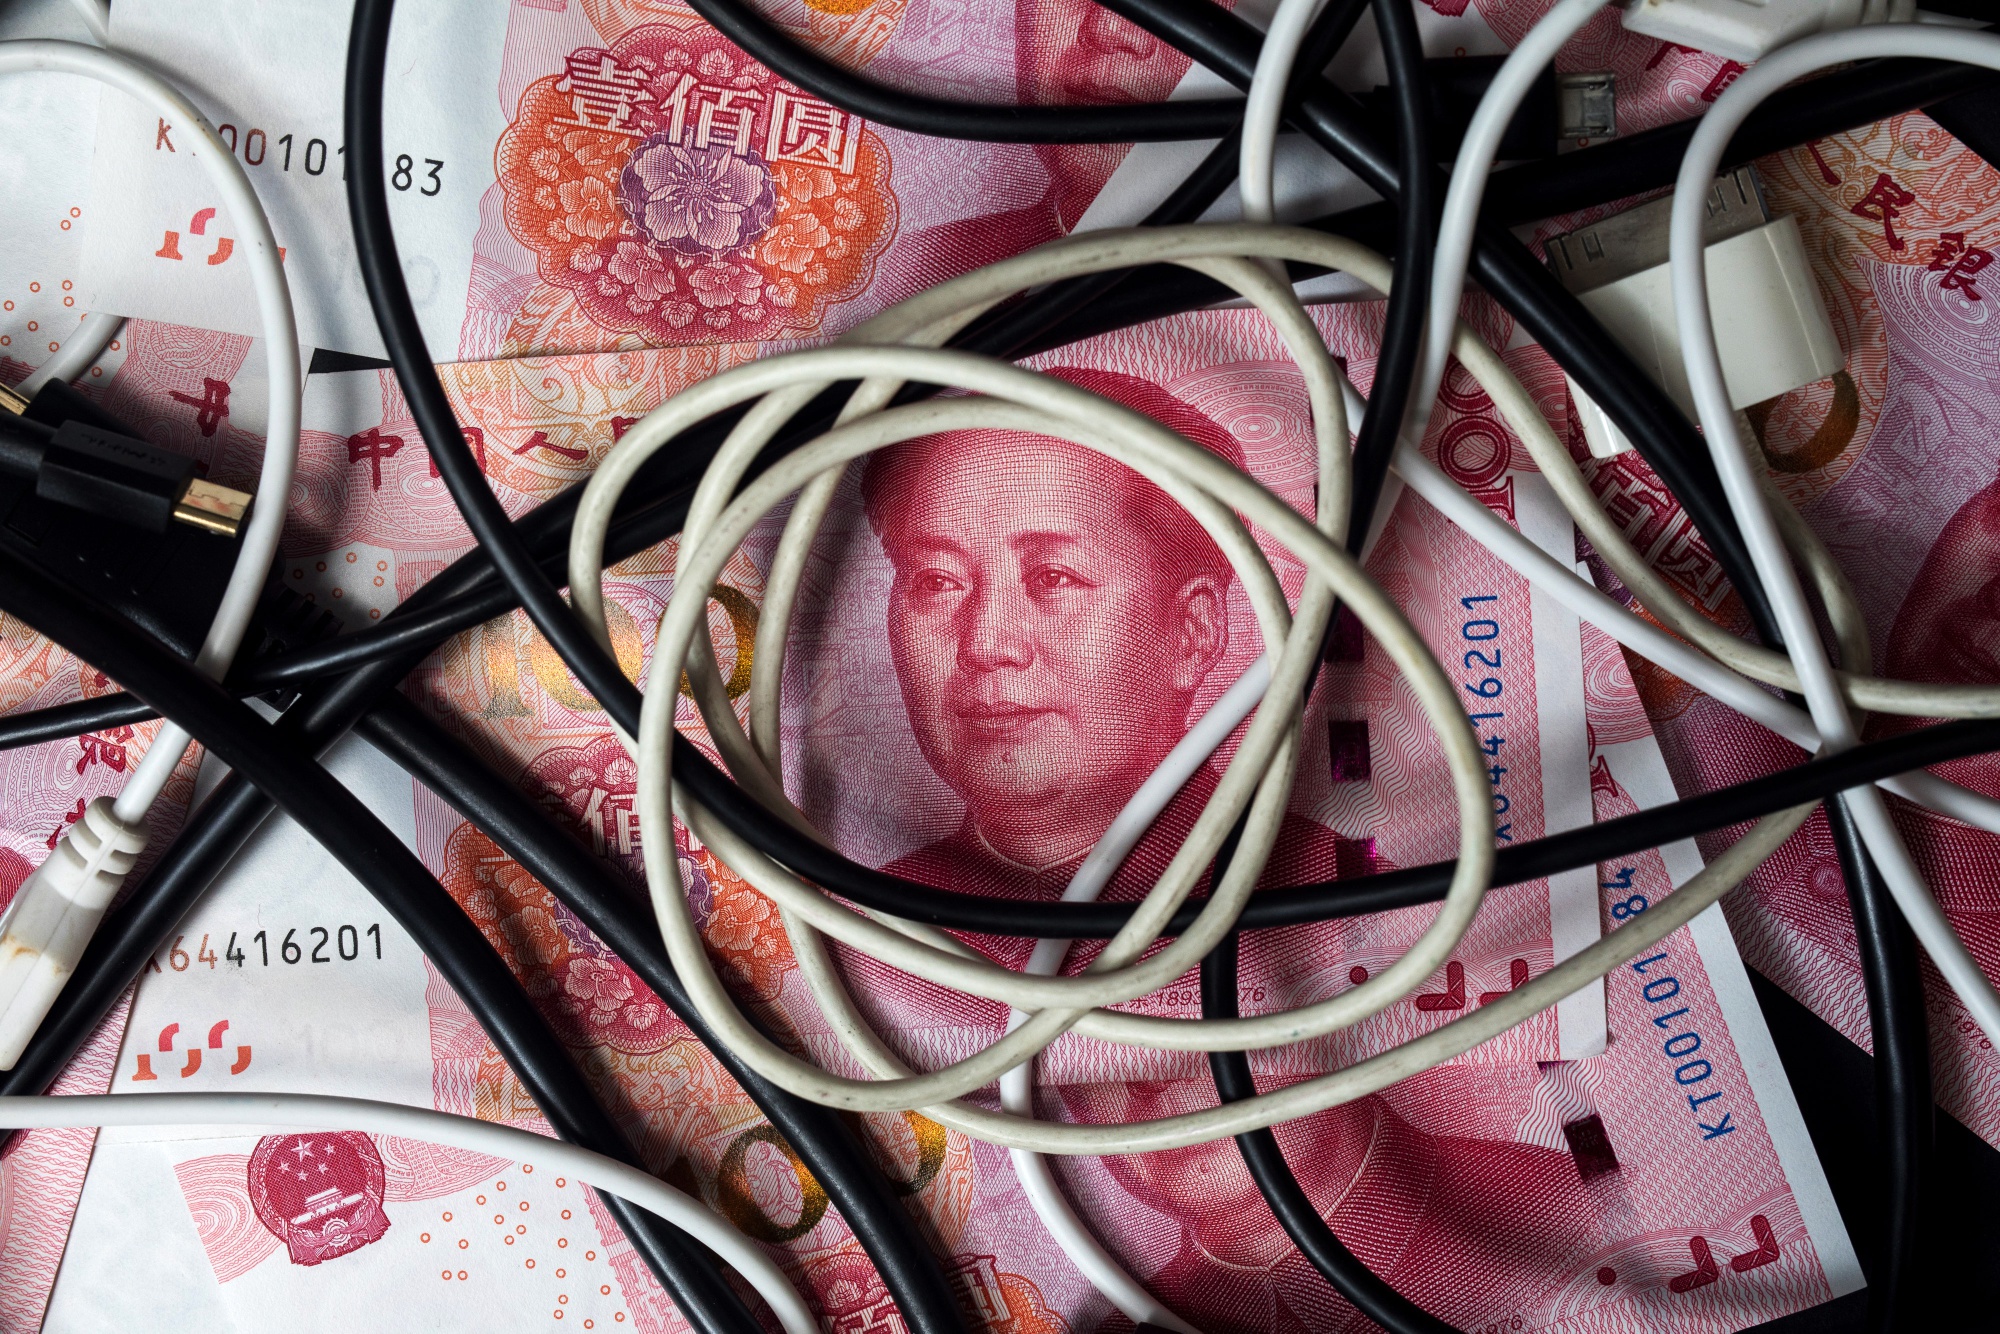 Chinese Yuan, Hong Kong Dollar and U.S. Dollar Banknotes